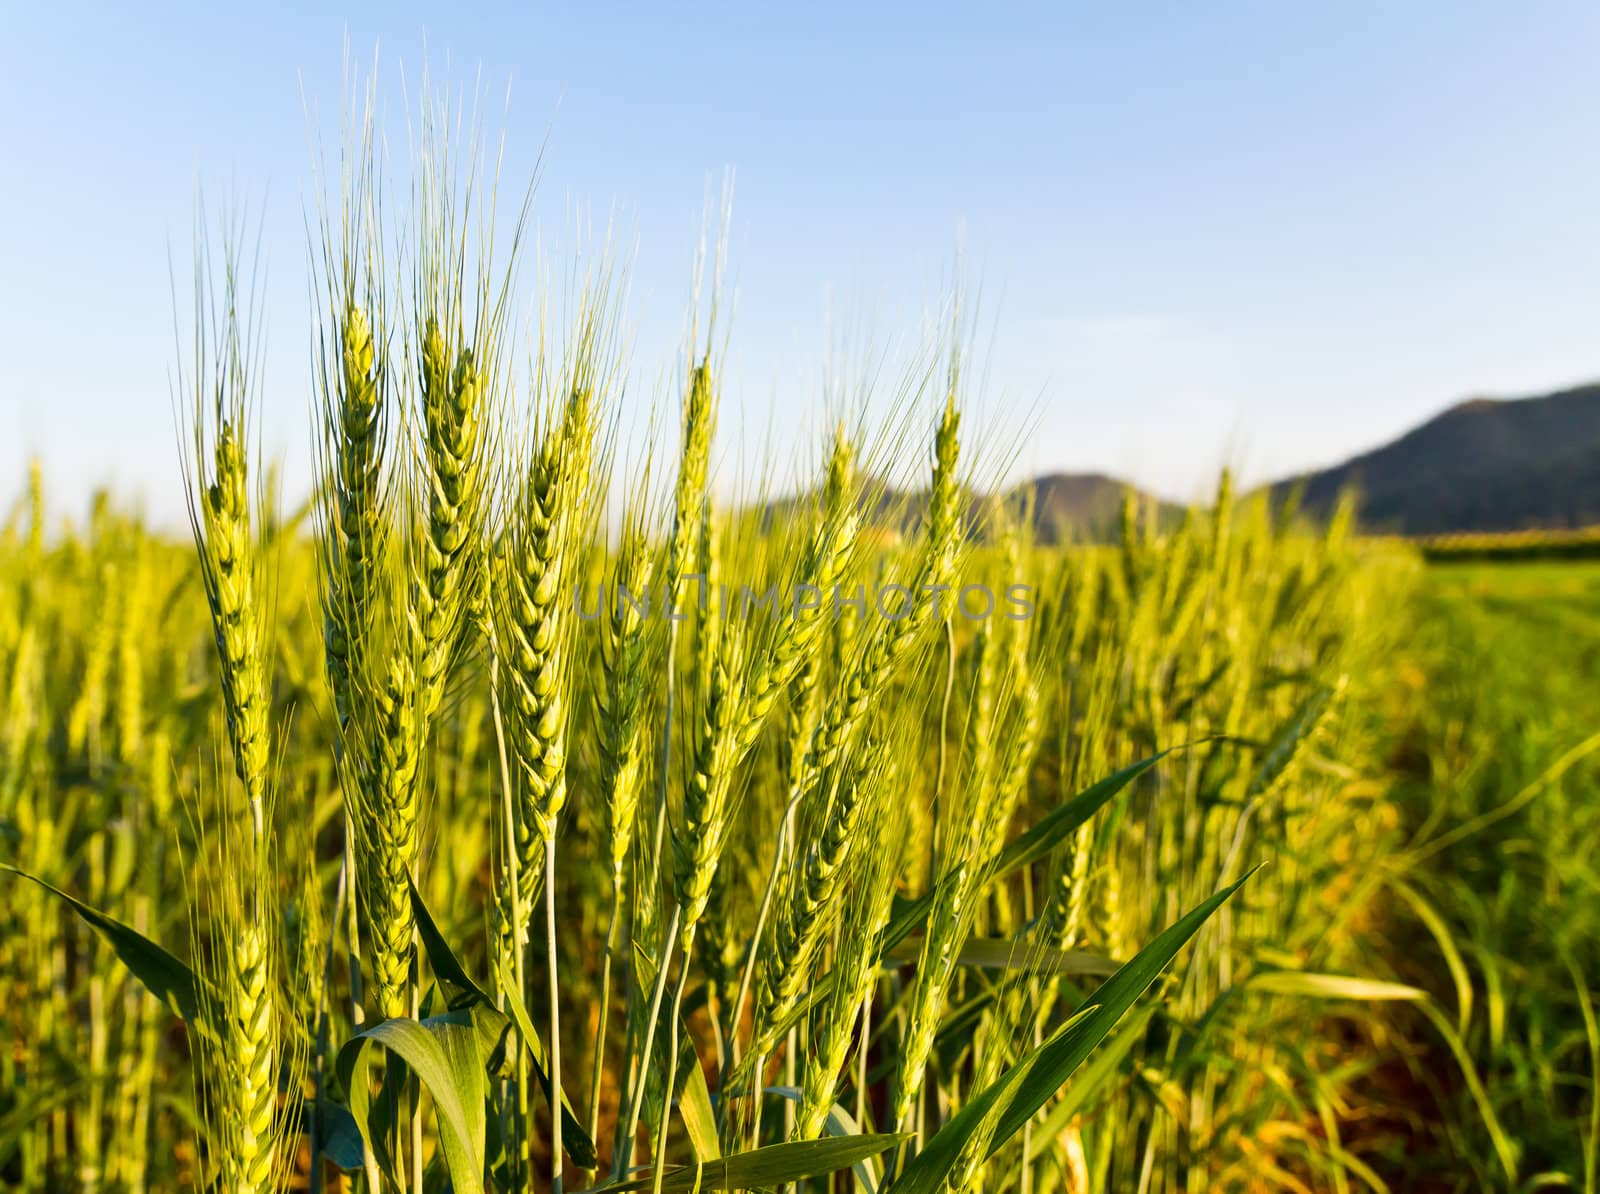 Green barley field2 by stoonn